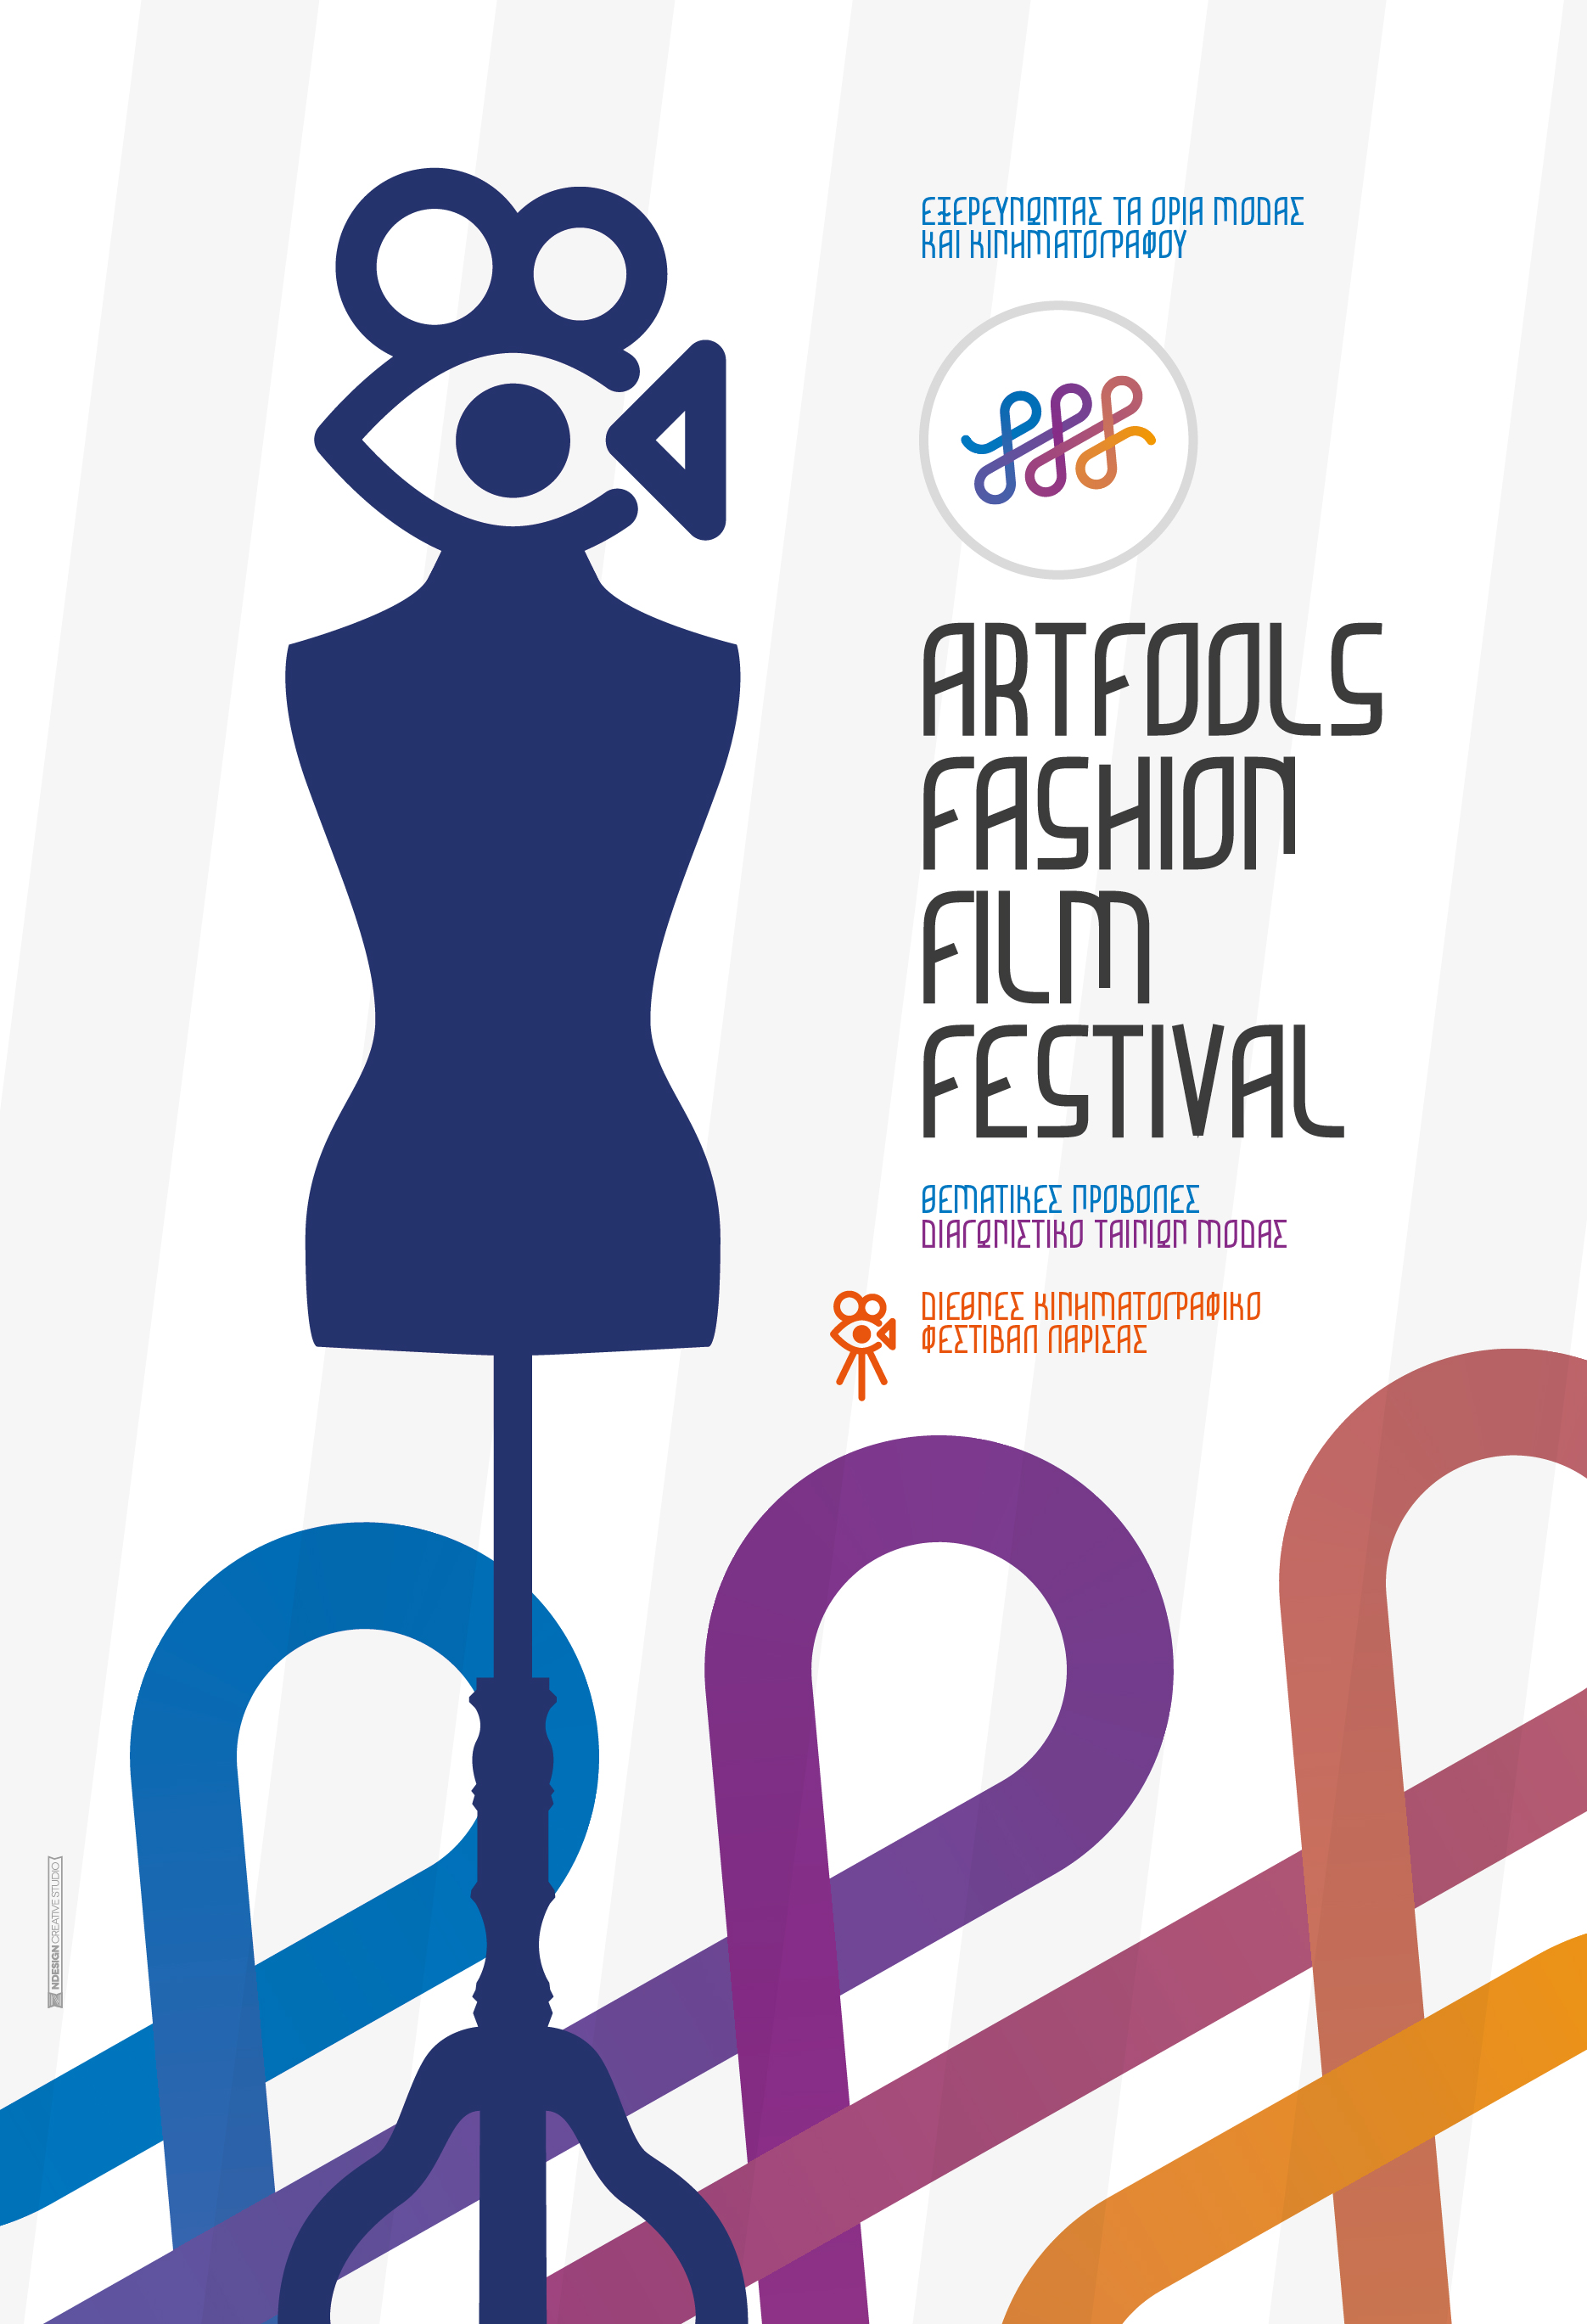 Ολοκληρώθηκαν οι εκδηλώσεις του 1ου Fashion Film Festival Λάρισας